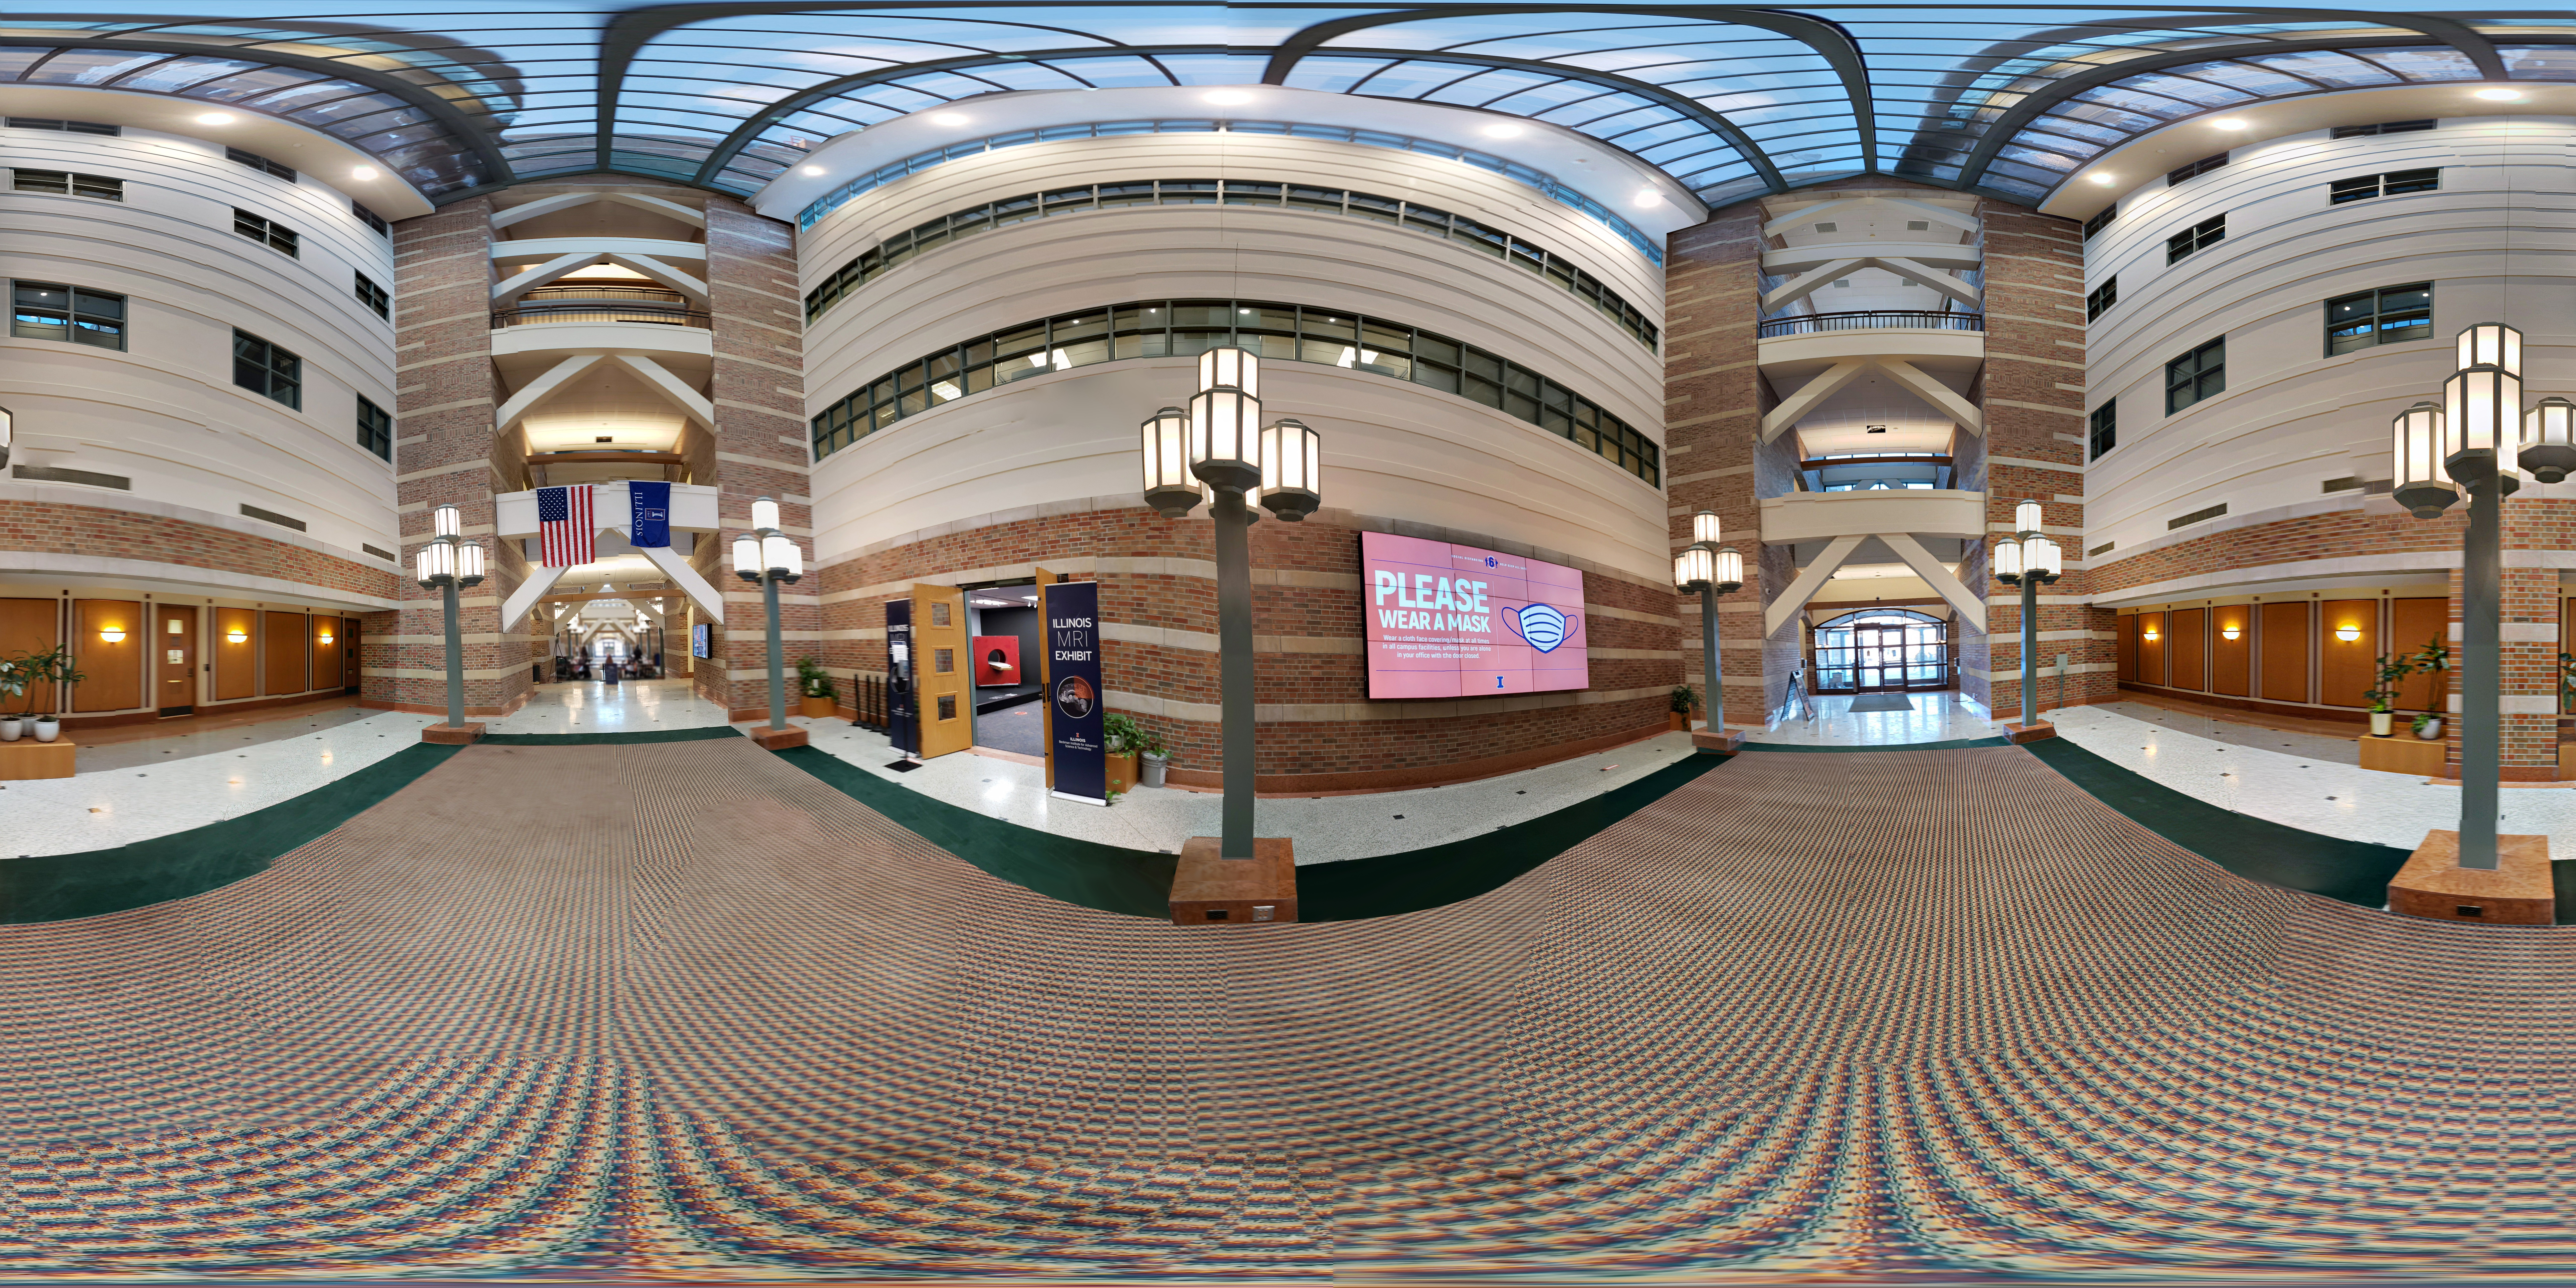 A 360 degree image of the Beckman Atrium